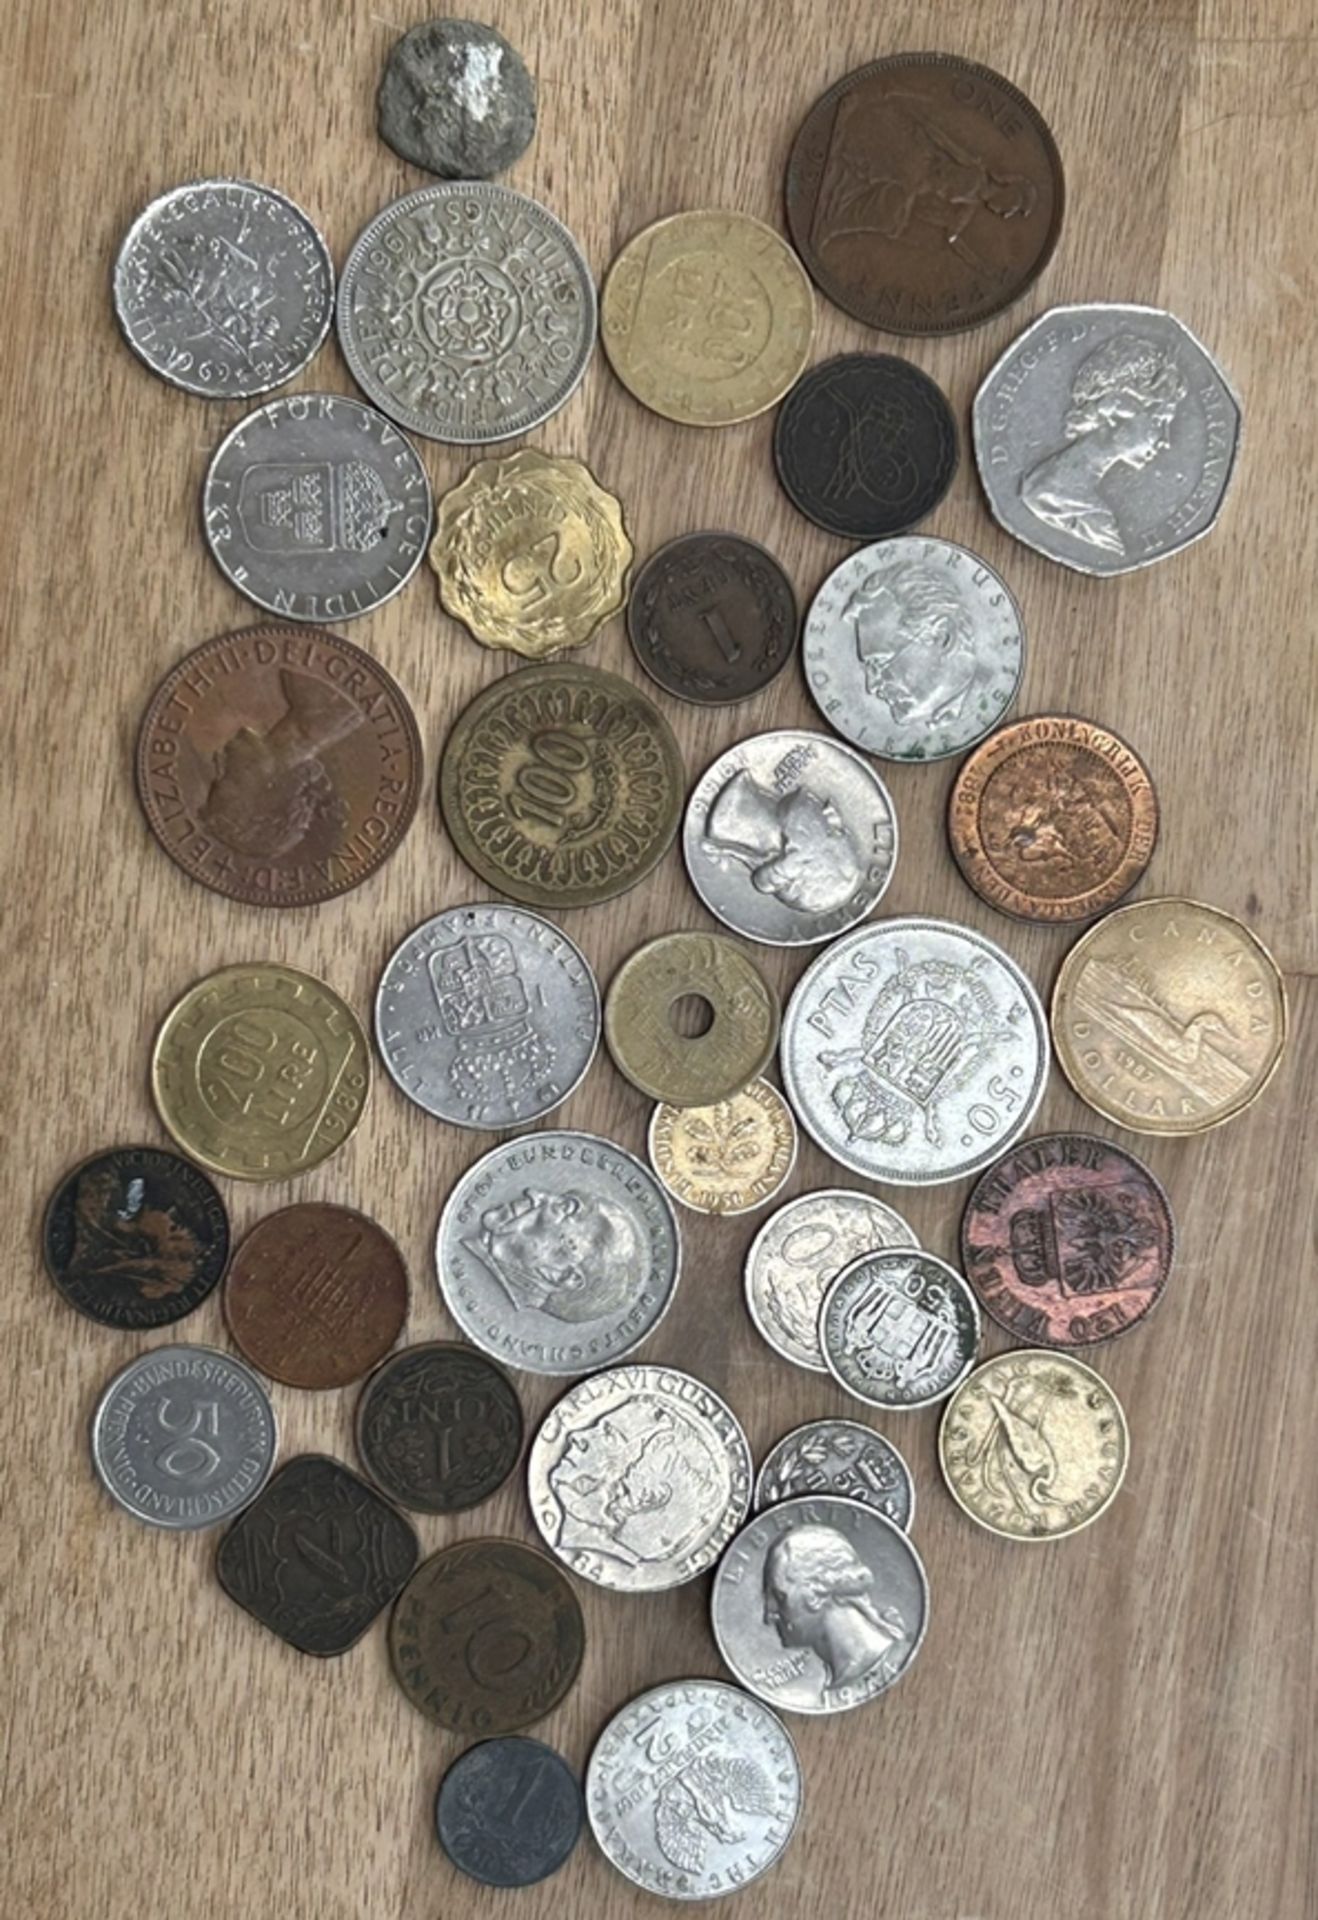 75xdiv. Kleinmünzen, tw. älter, unsortiert, ungeprüft, dabei einige alte chinesische Münzen? - Bild 7 aus 21